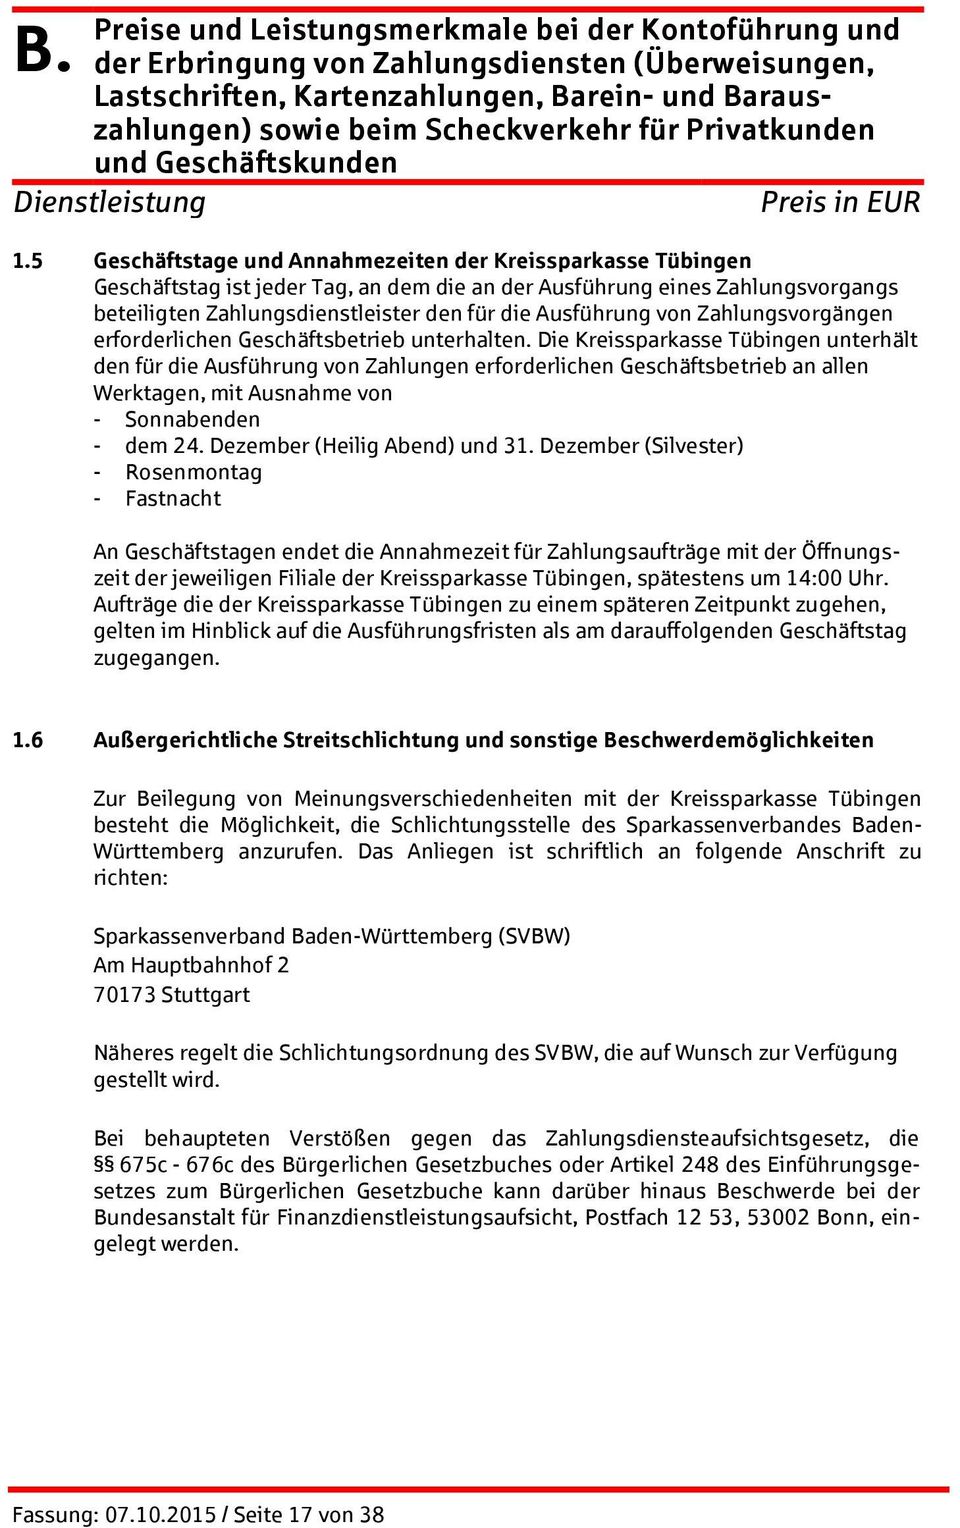 Die Kreissparkasse Tübingen unterhält den für die Ausführung von Zahlungen erforderlichen Geschäftsbetrieb an allen Werktagen, mit Ausnahme von - Sonnabenden - dem 24. Dezember (Heilig Abend) und 31.